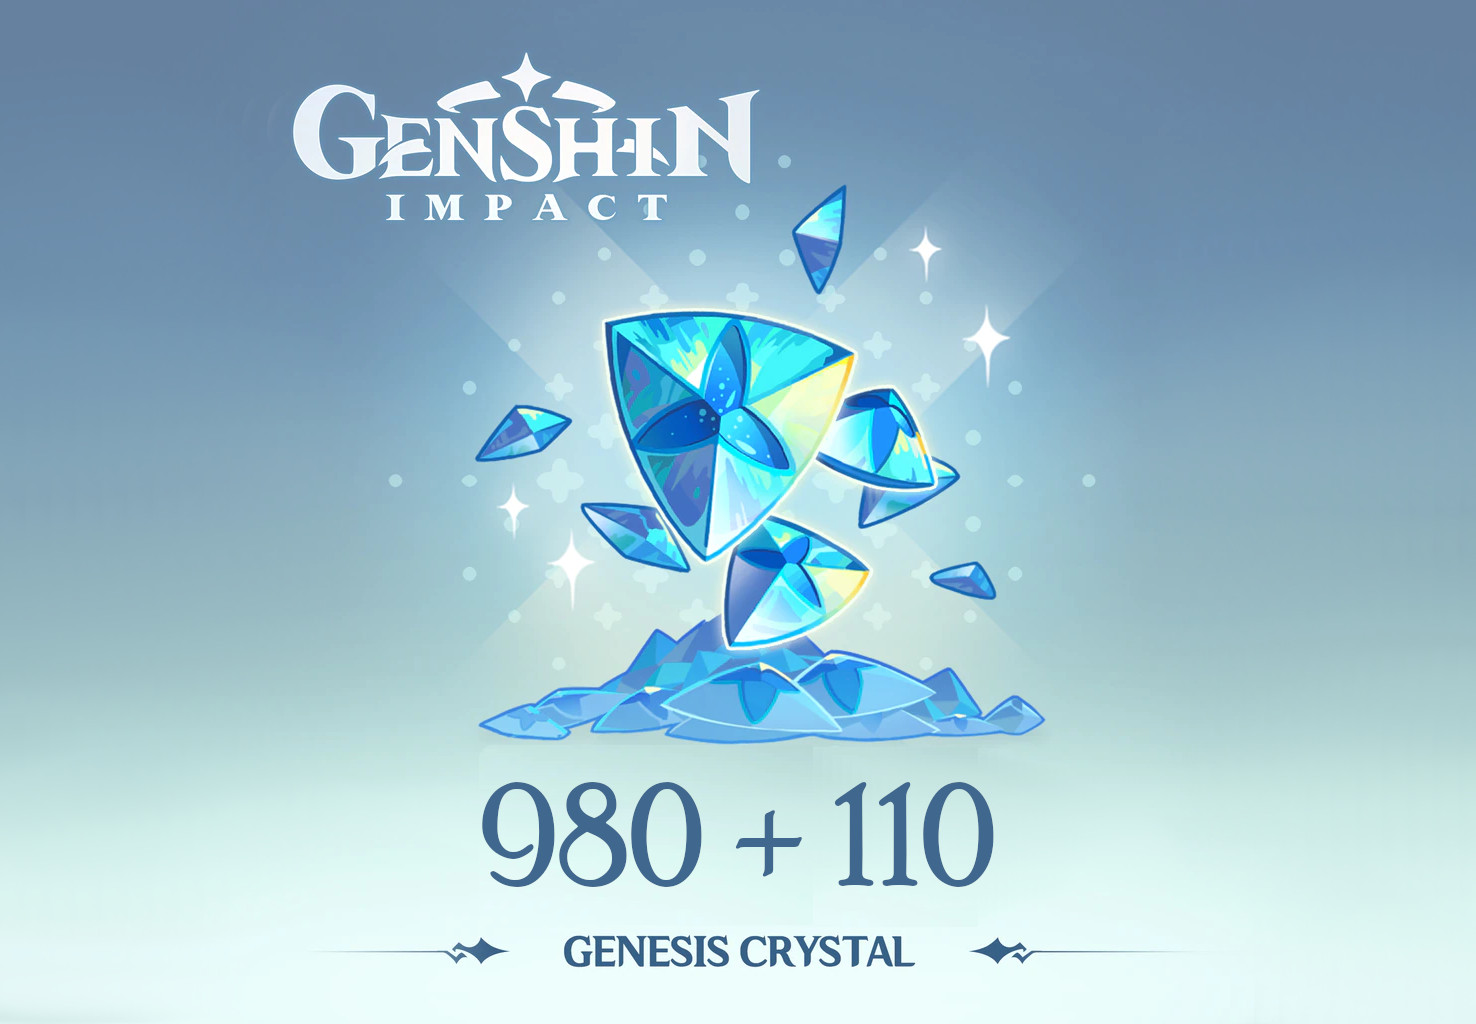 Genshin Impact - 980 + 110 Genesis Crystals Reidos Voucher 17.23 $